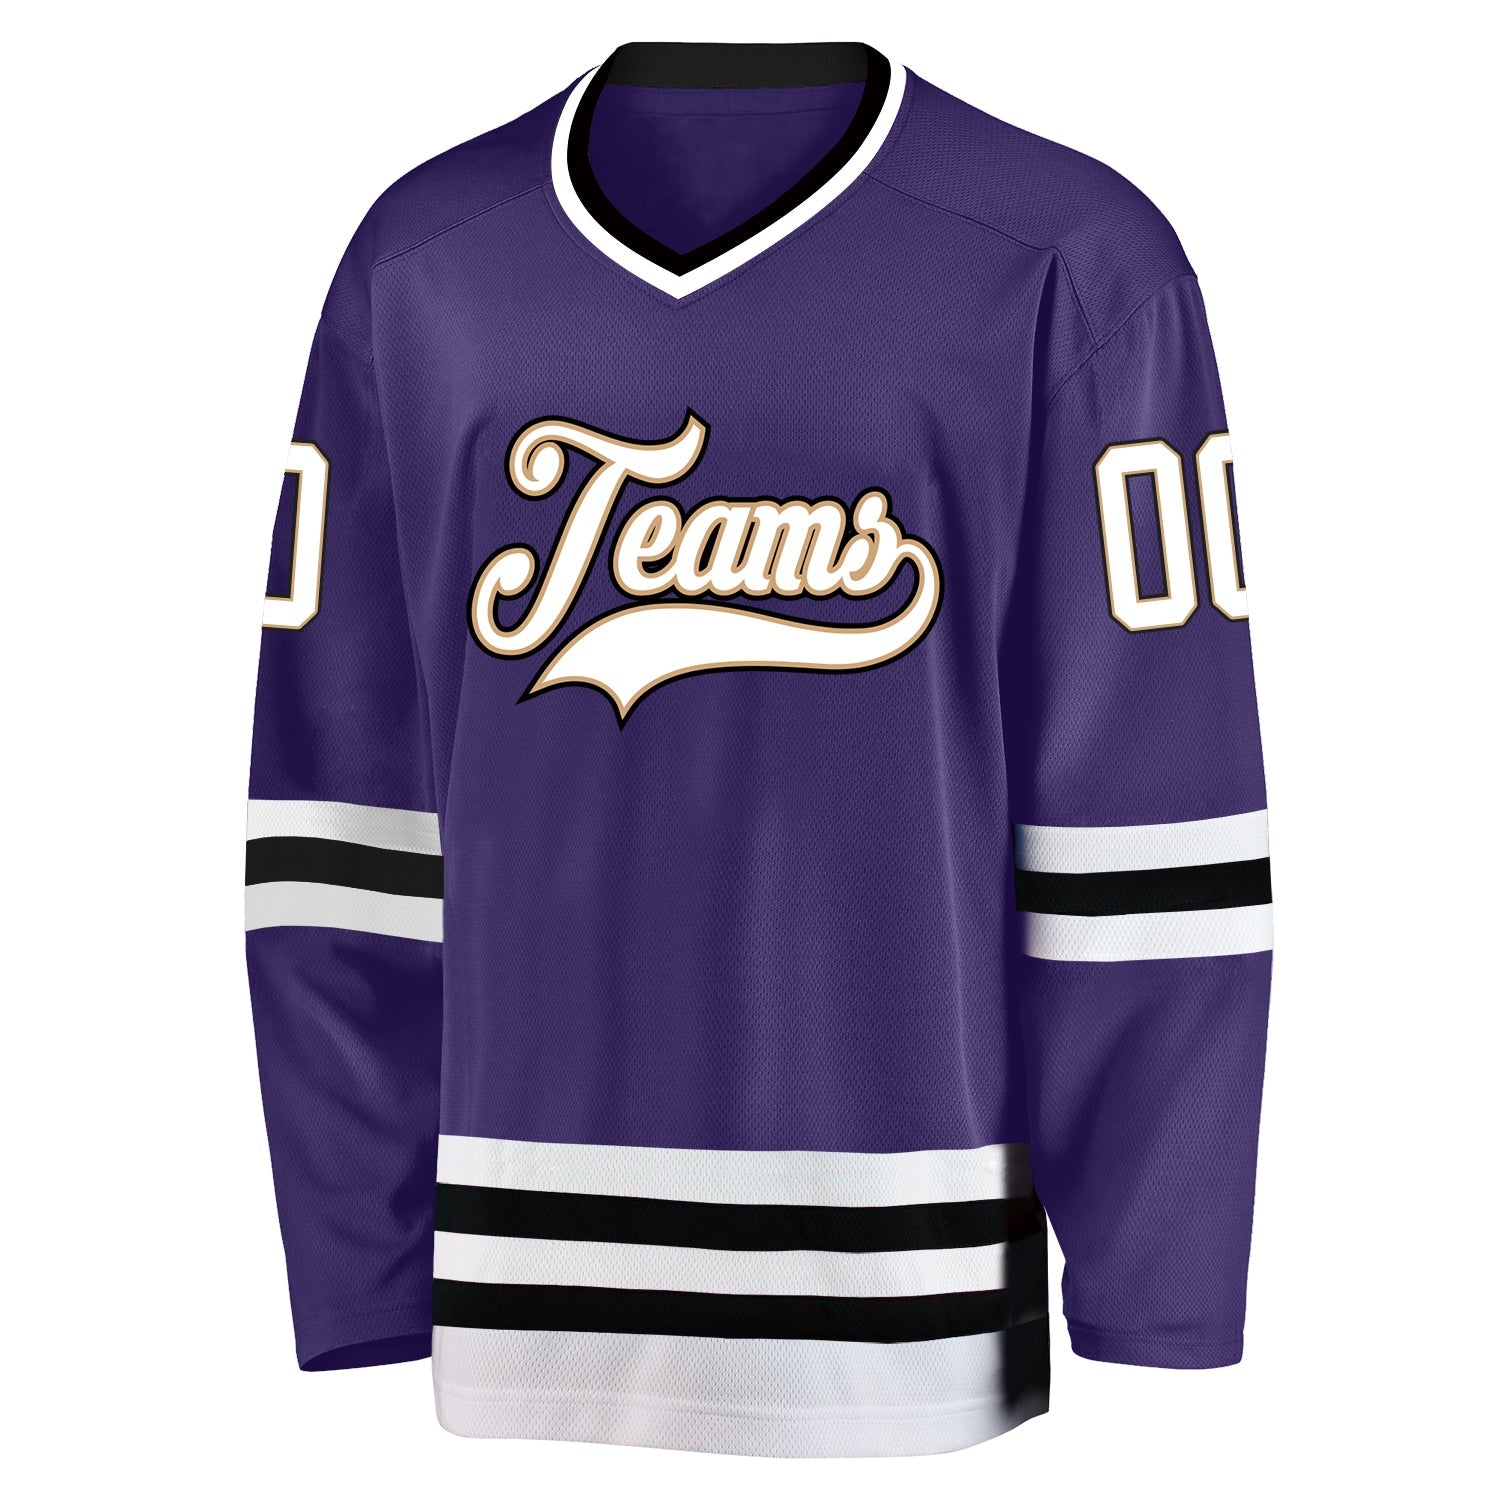 Maillot de hockey personnalisé violet blanc-noir